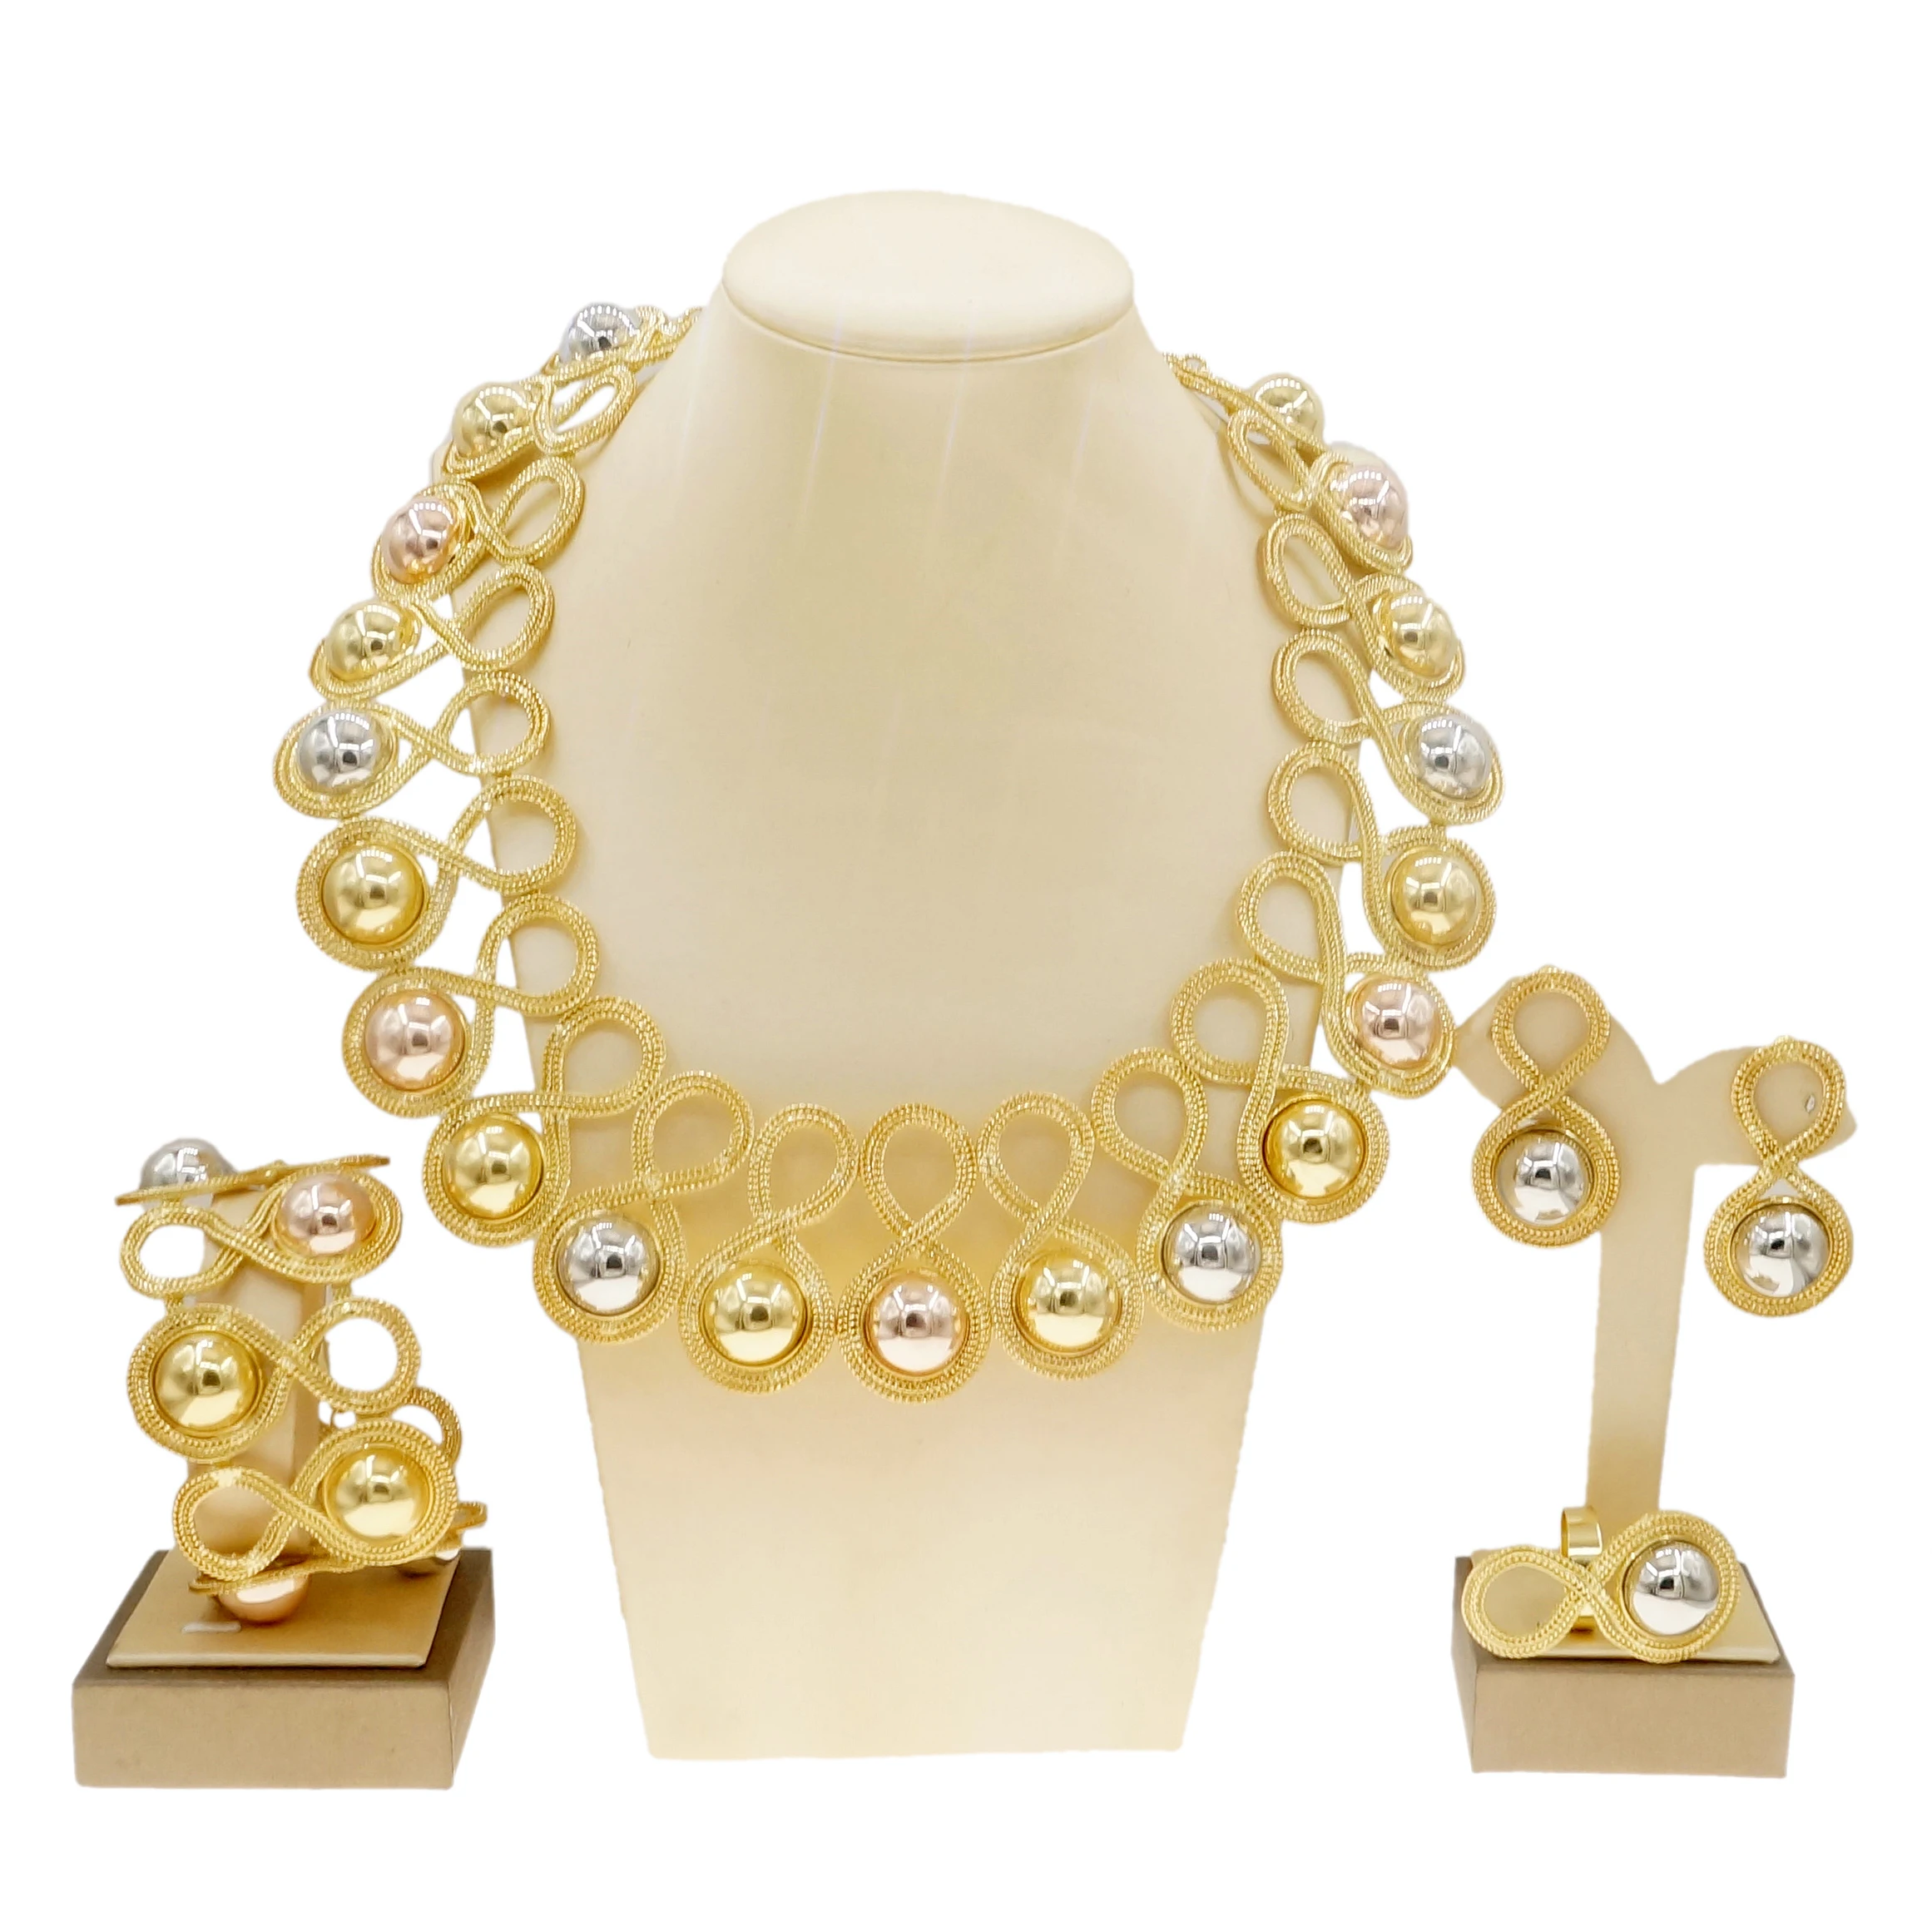 Yulaili новые бразильские золотые стильные женские ювелирные изделия набор ручной ожерелье браслет серьги кольцо бразильские оптовые ювелирн...